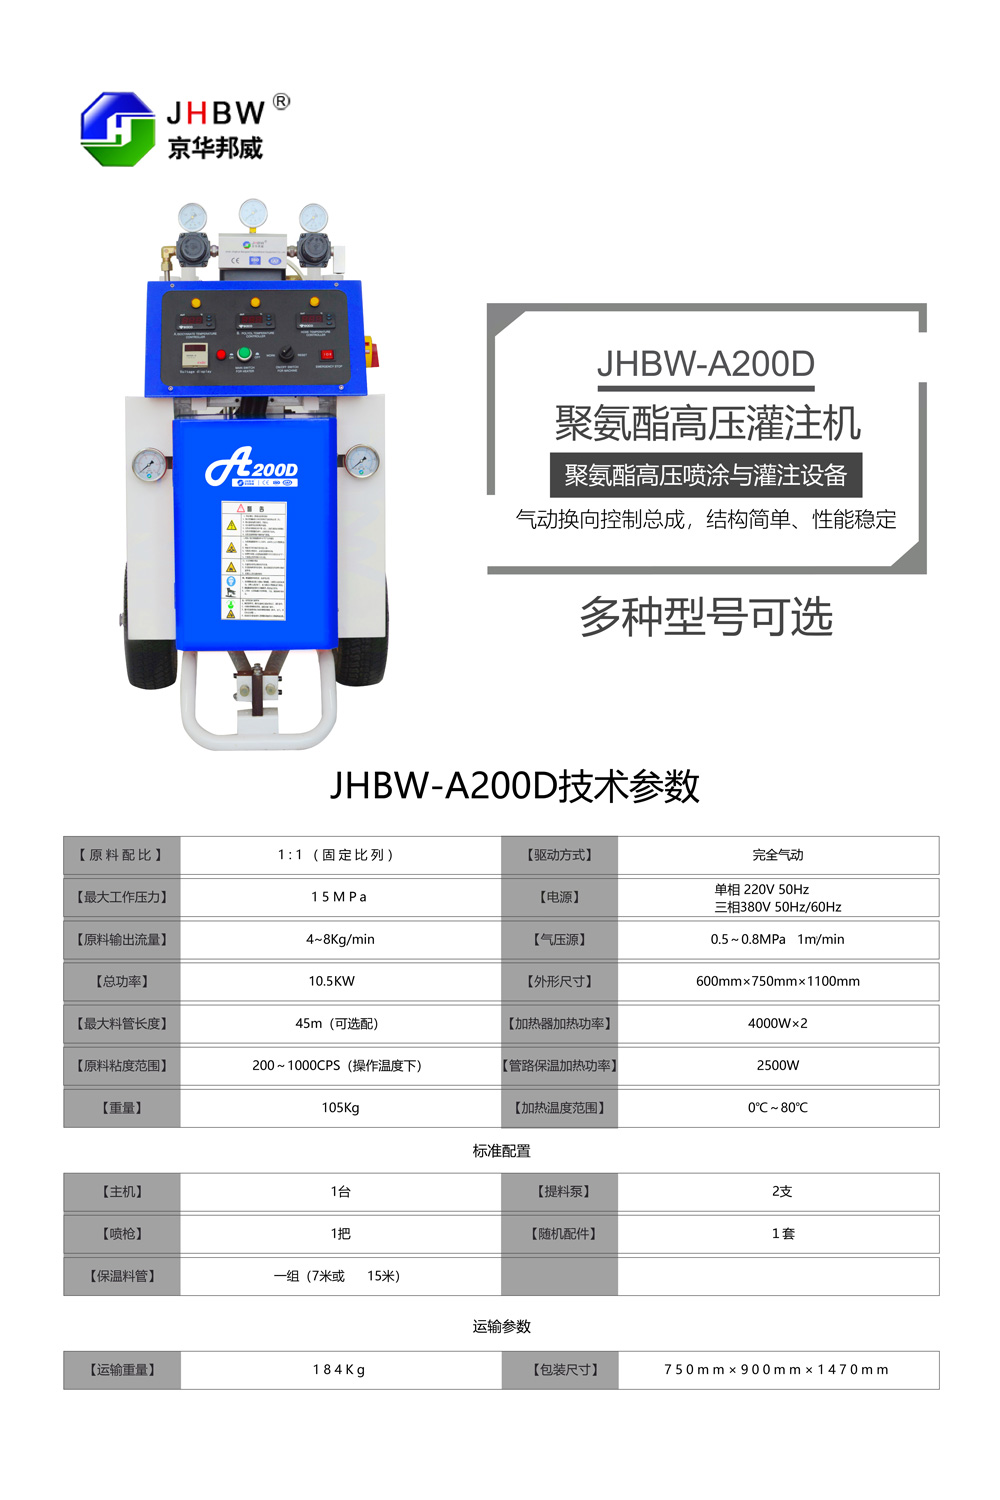 JHBW-A200D聚氨酯喷涂设备